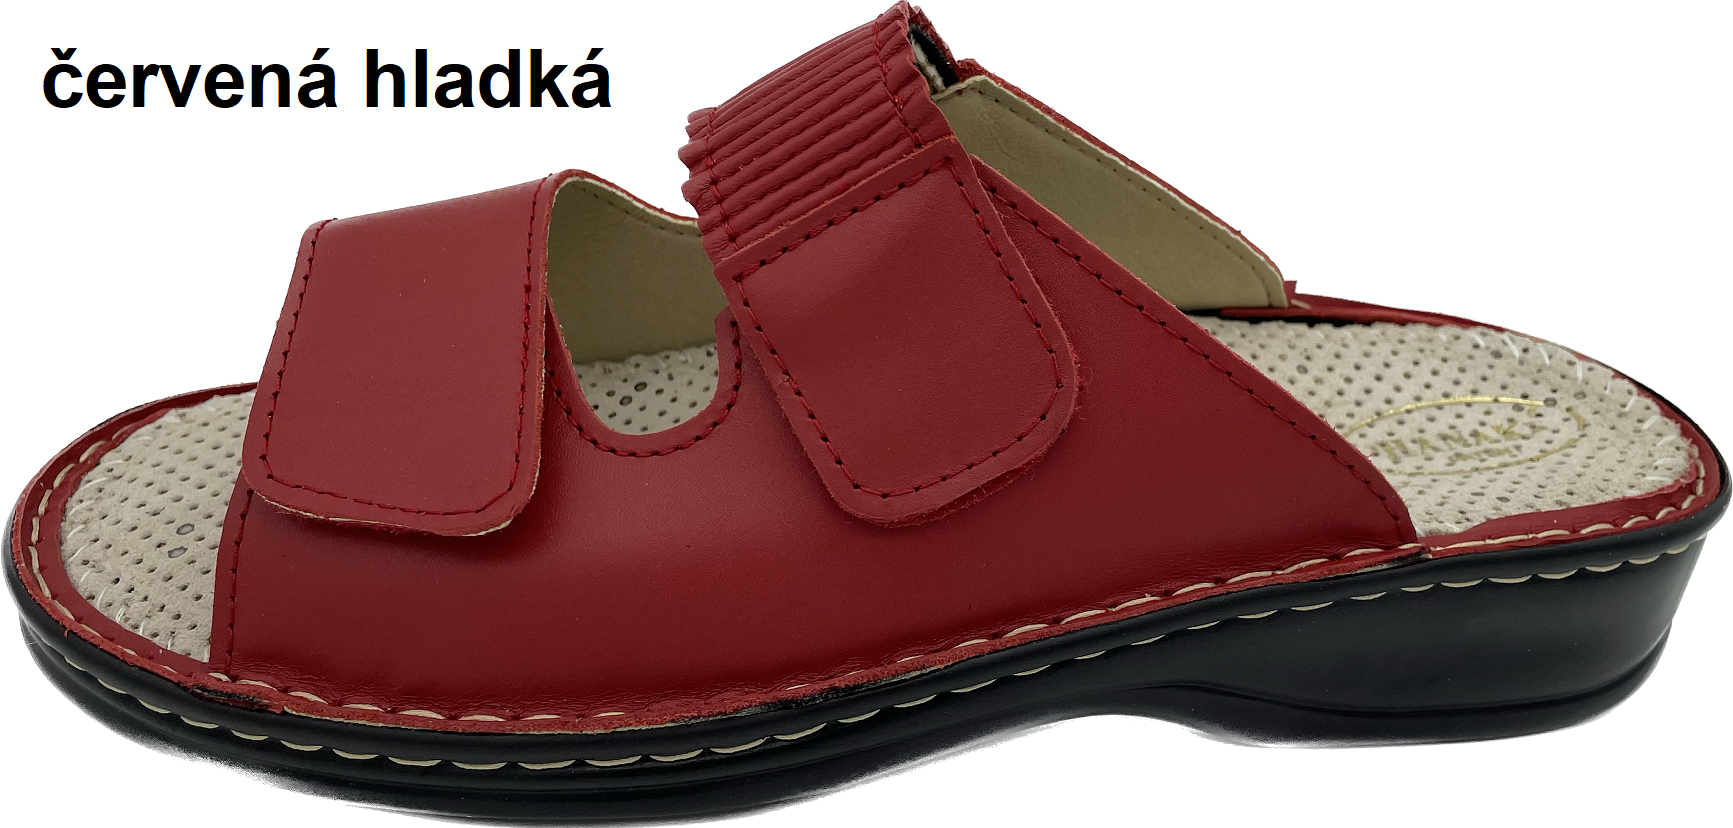 Boty Hanák vzor 304 - černá podešev Barva usně: červená hladká, Velikosti obuvi: 39